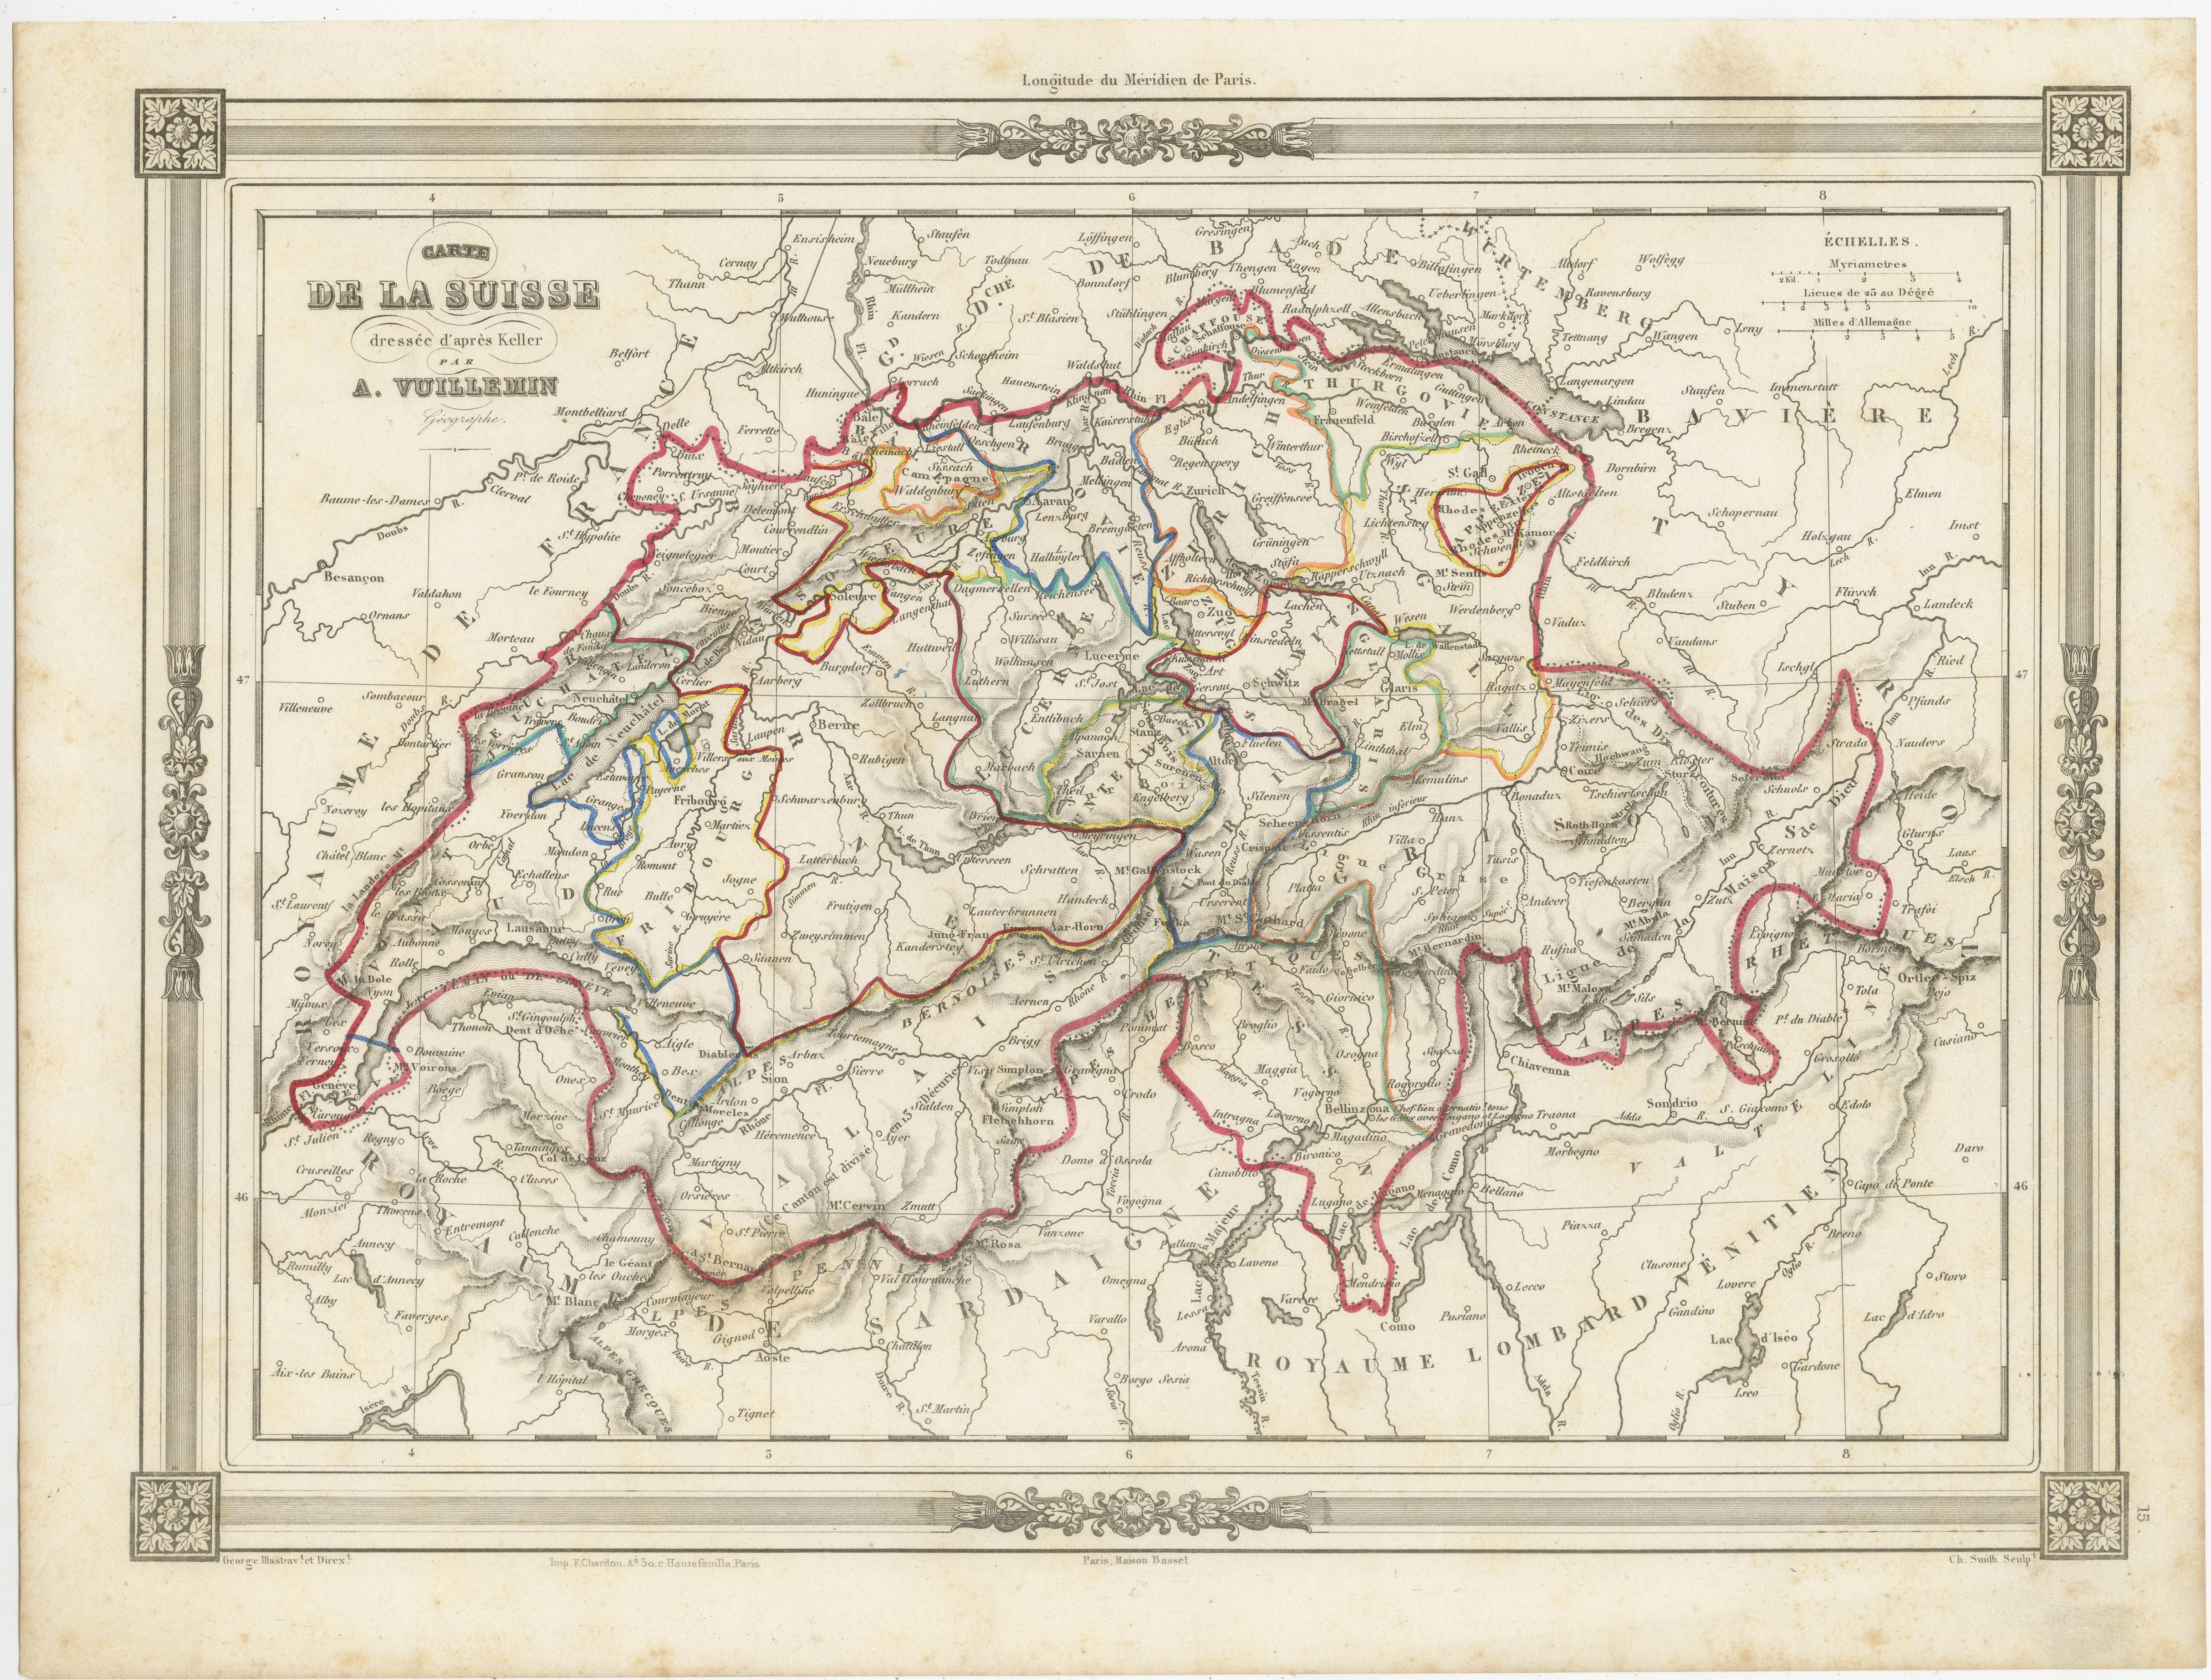 Die antike Karte mit dem Titel 'Carte de la Suisse' ist eine attraktive Karte der Schweiz. Hier sind die wichtigsten Details und Merkmale der Karte:

1. **Geografischer Geltungsbereich**:
   - Die Karte deckt die Schweiz flächendeckend ab und bildet